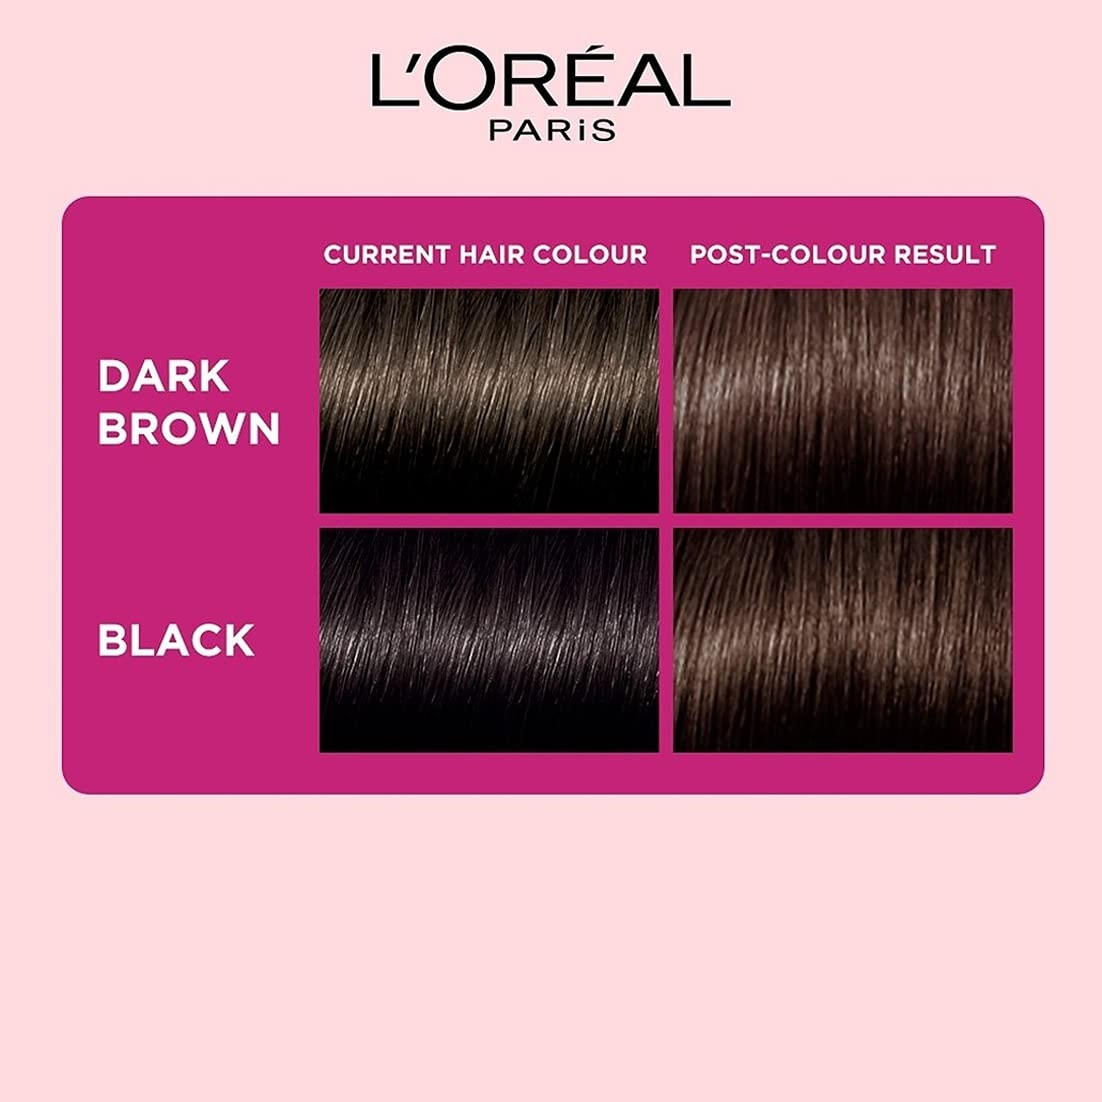 L'Oreal Paris Semi-Permanent Hair Colour, Casting Crème Gloss, Dark Brown 400, 87.5g+72ml